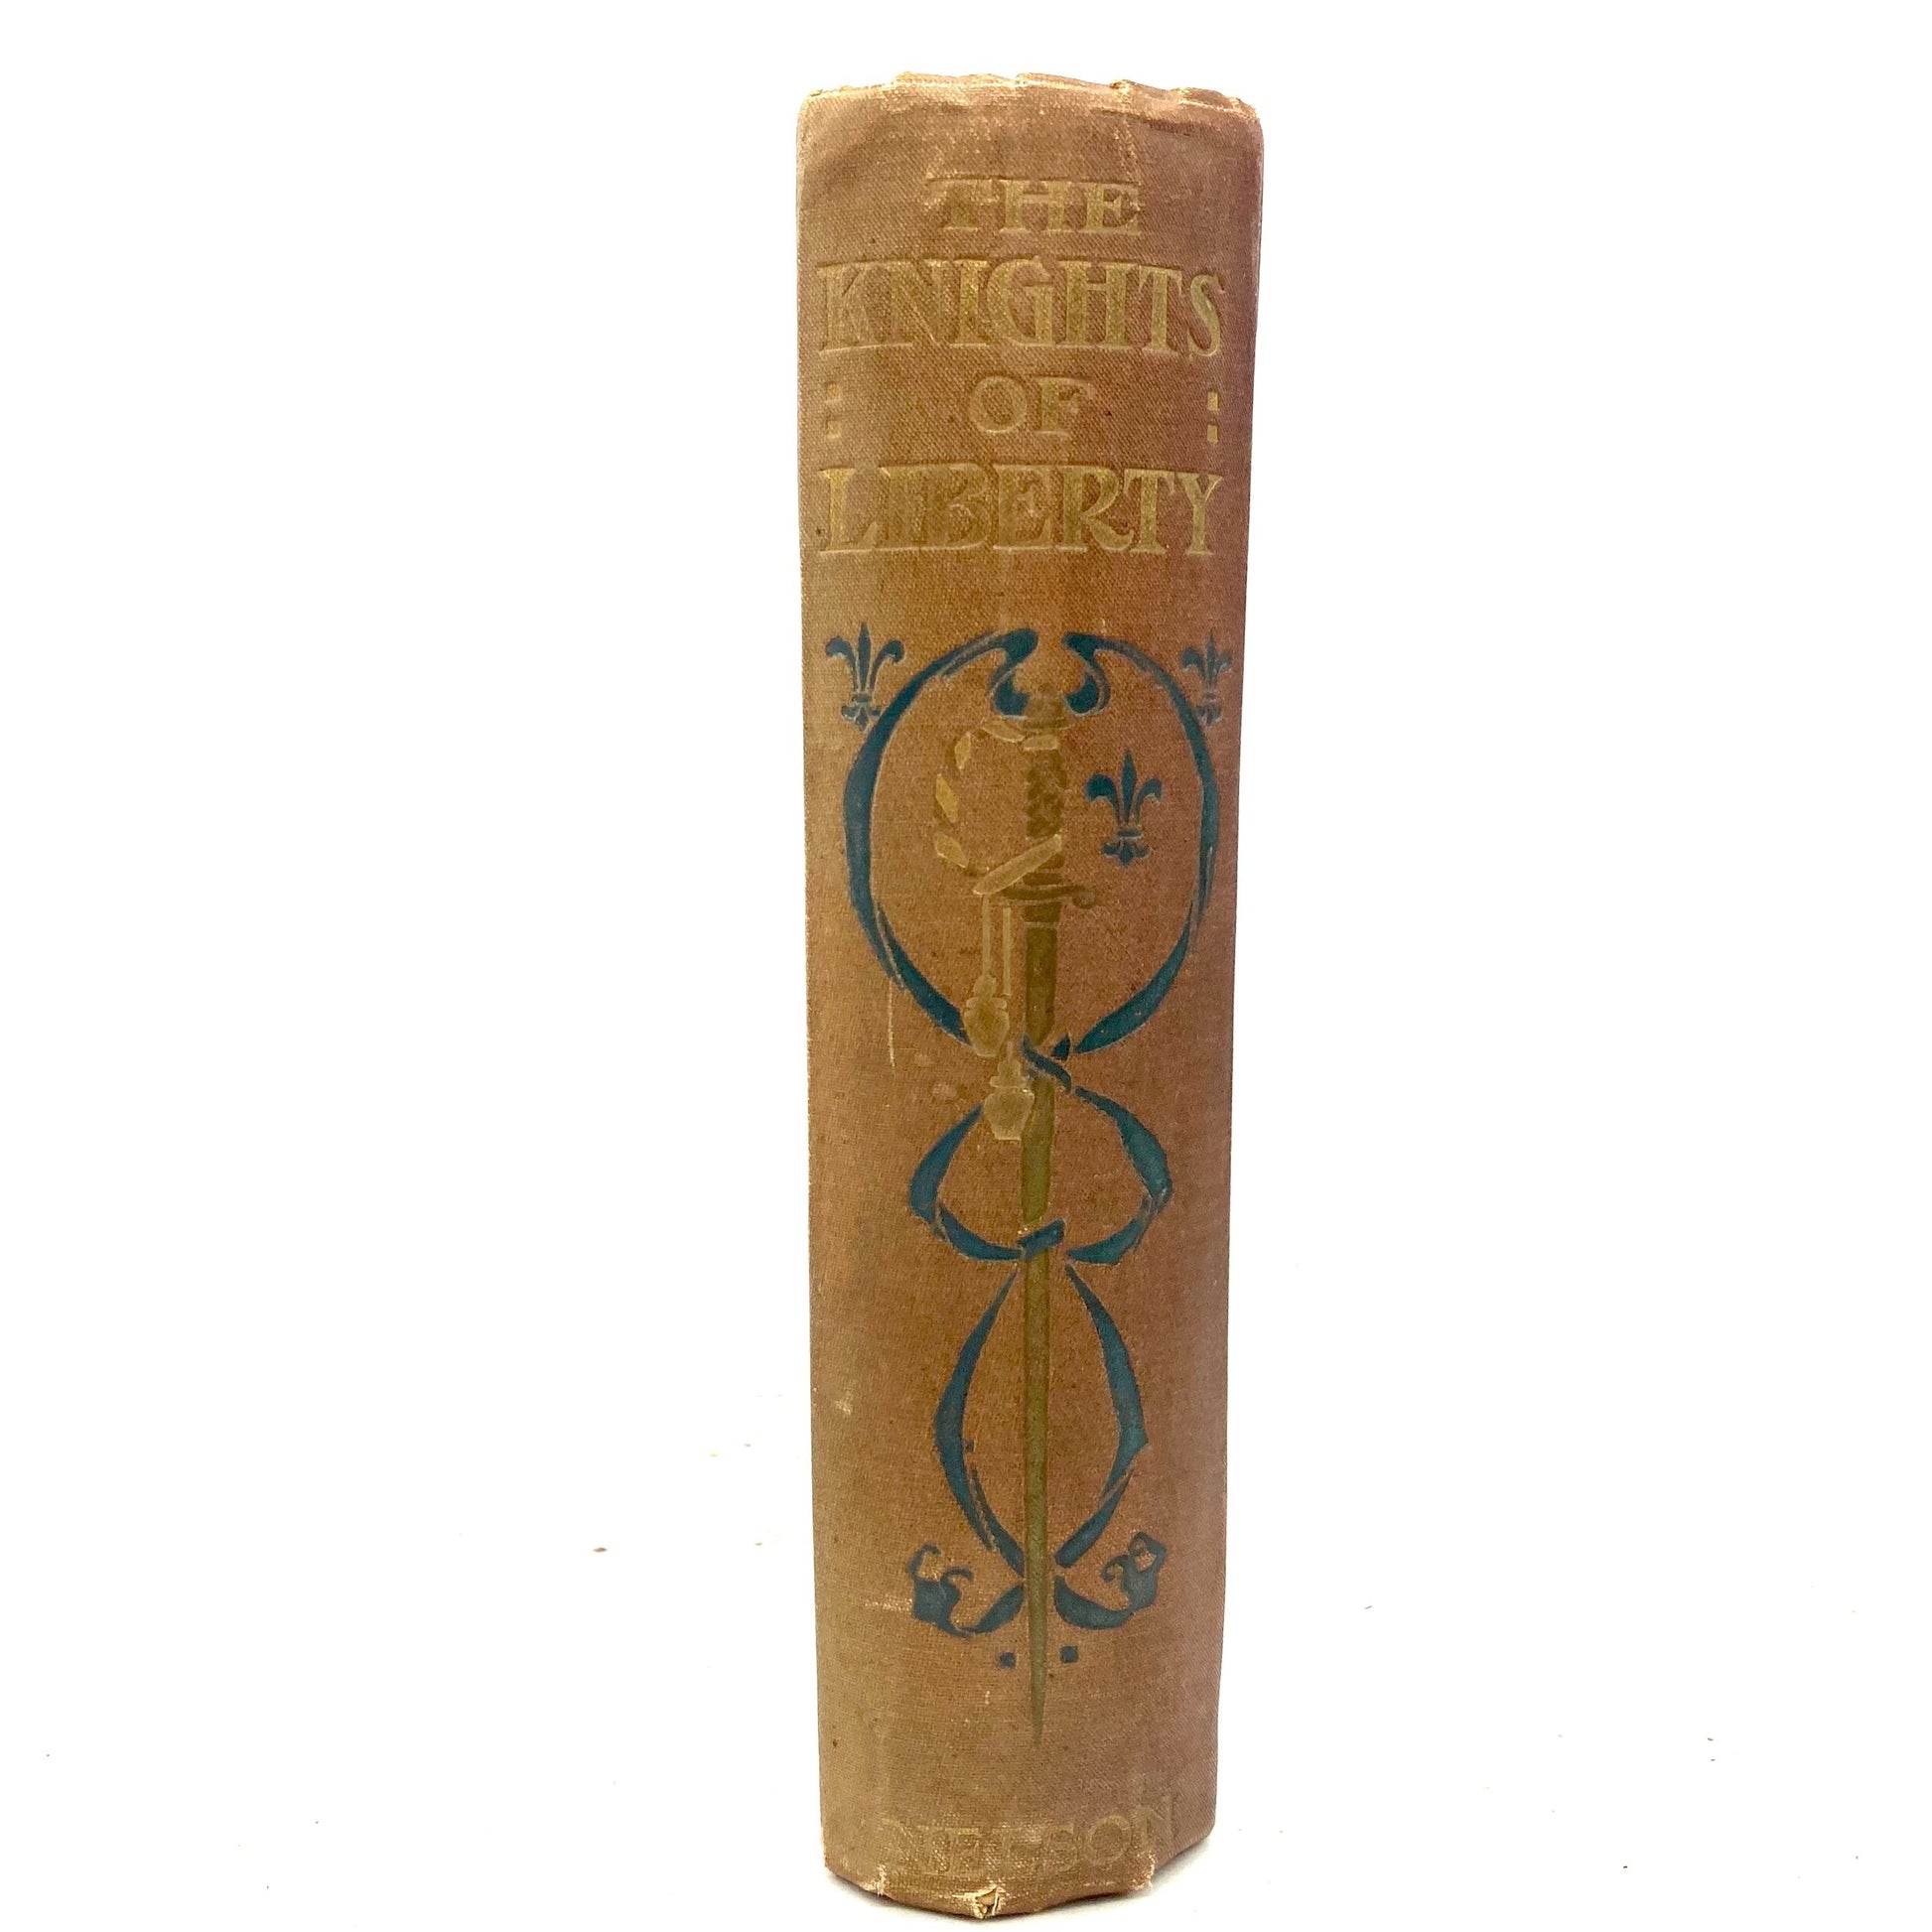 POLLARD, Eliza F. "The Knights of Liberty" [Thomas Nelson, c1908] - Buzz Bookstore